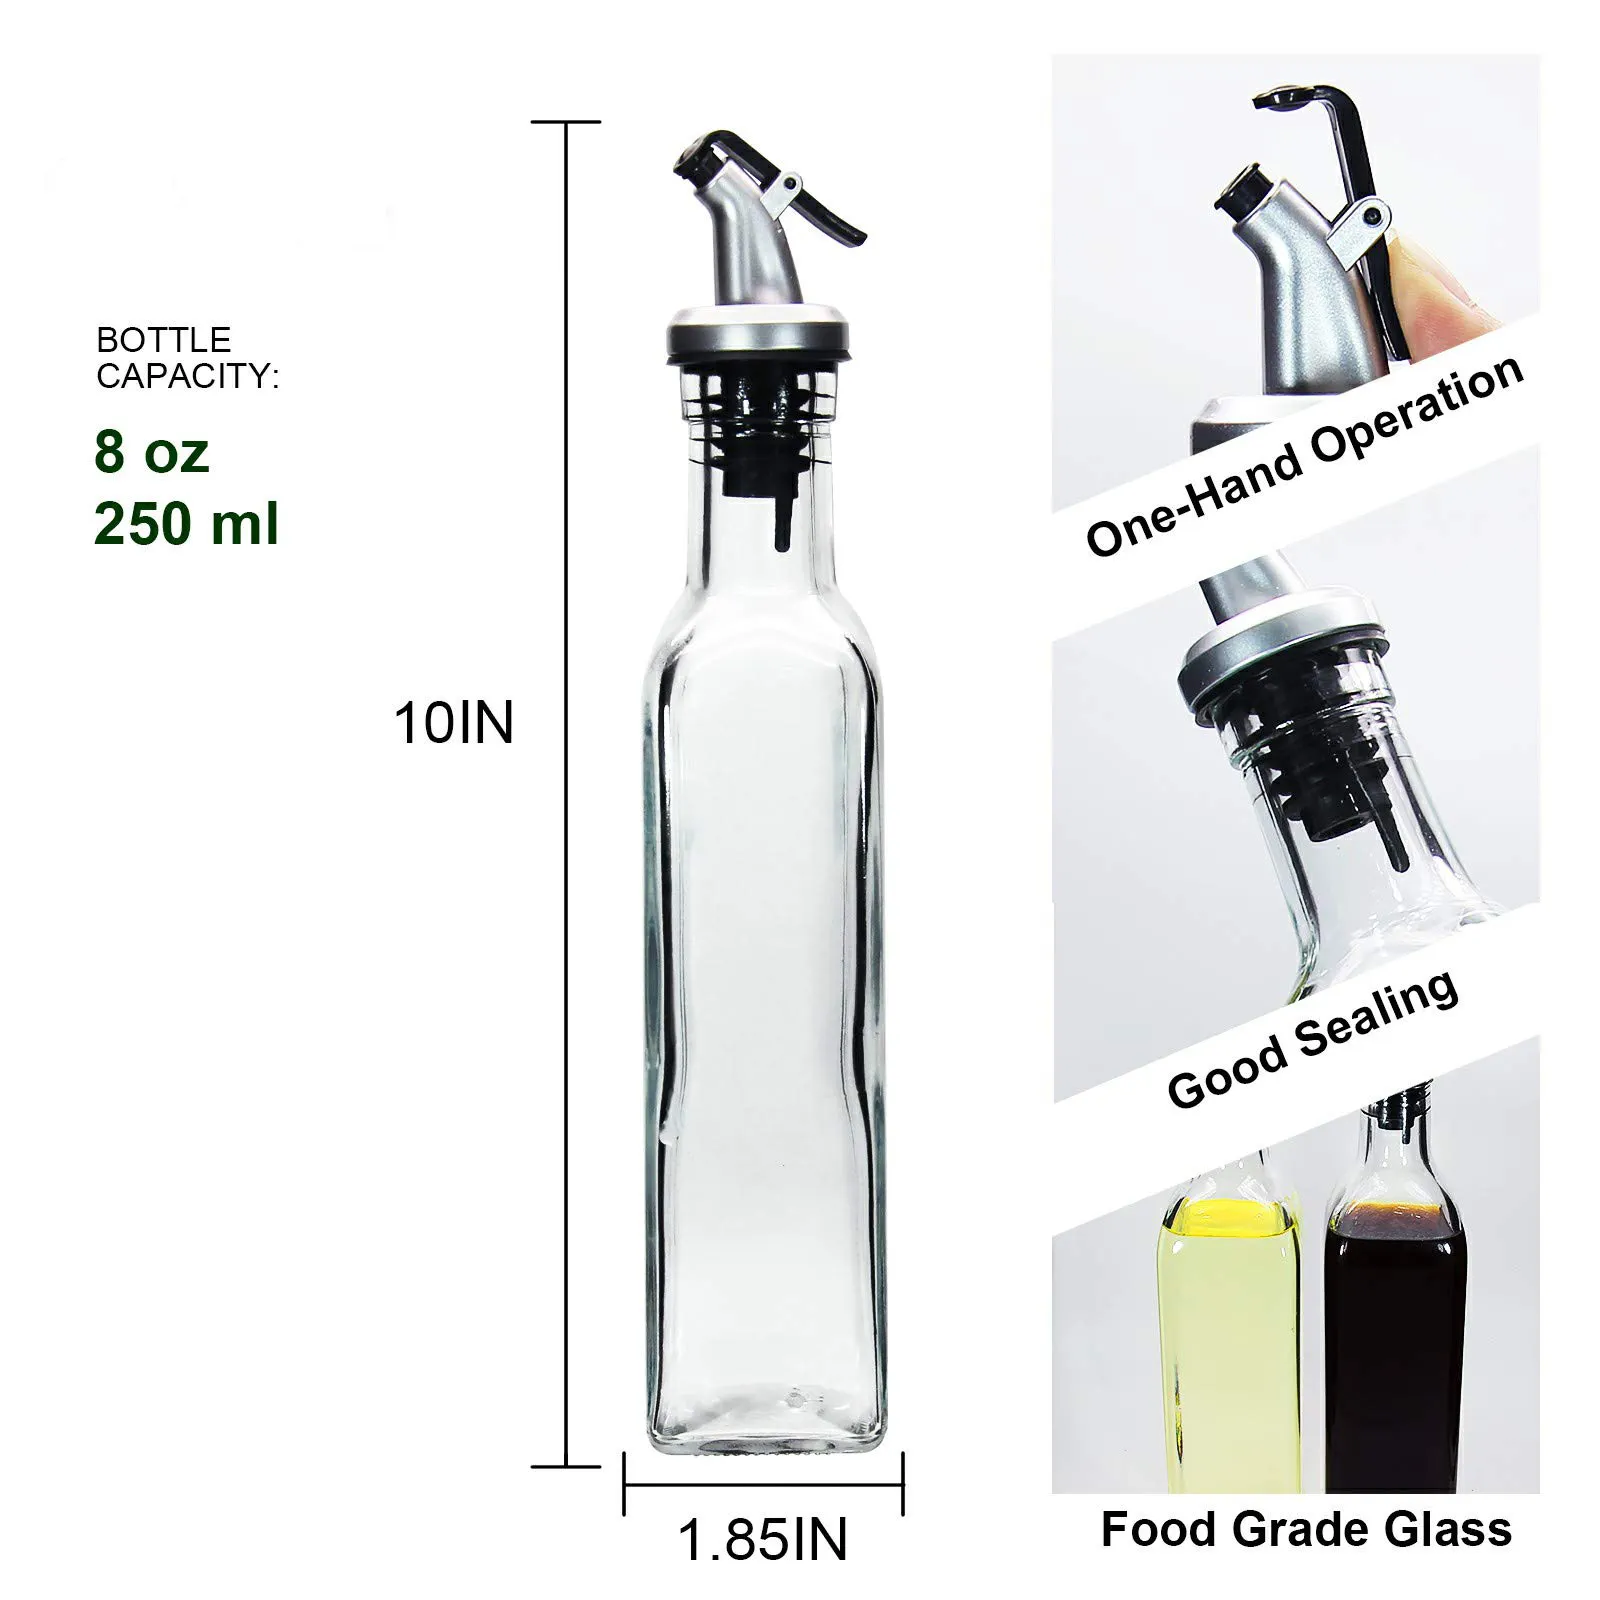 ขวดแก้วใสขนาด8ออนซ์ใส่น้ำมันมะกอกใช้ซ้ำได้ขวดใส่น้ำมันน้ำส้มสายชูและน้ำมันปรุงอาหารสำหรับห้องครัว